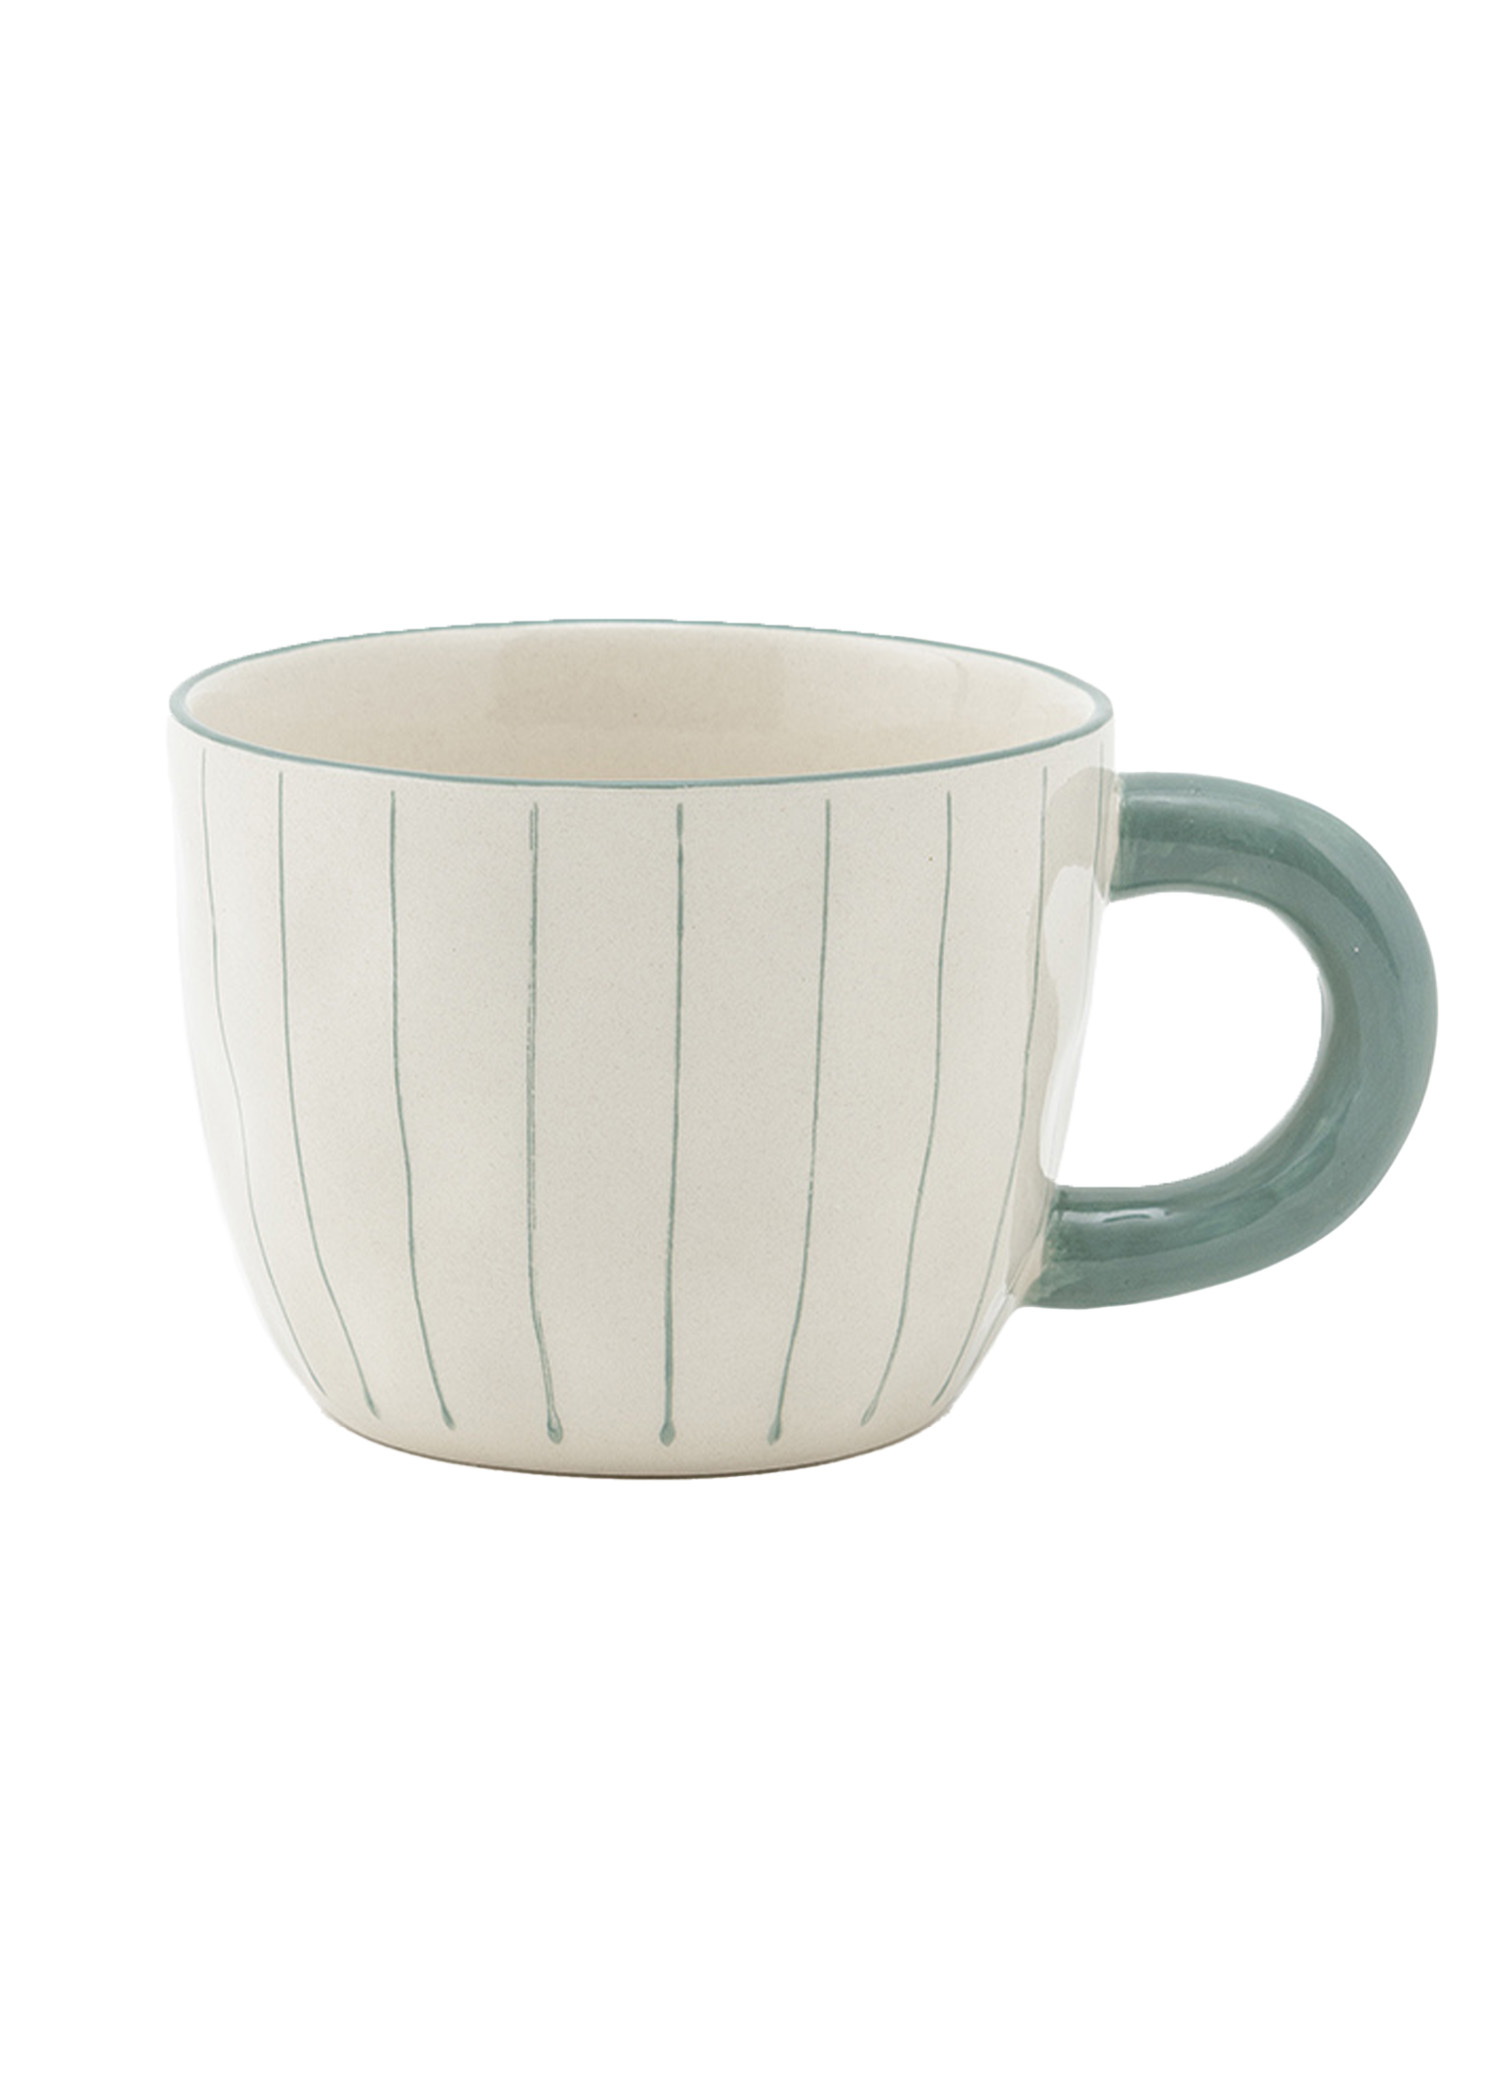 Hand-painted stoneware mug Image 0